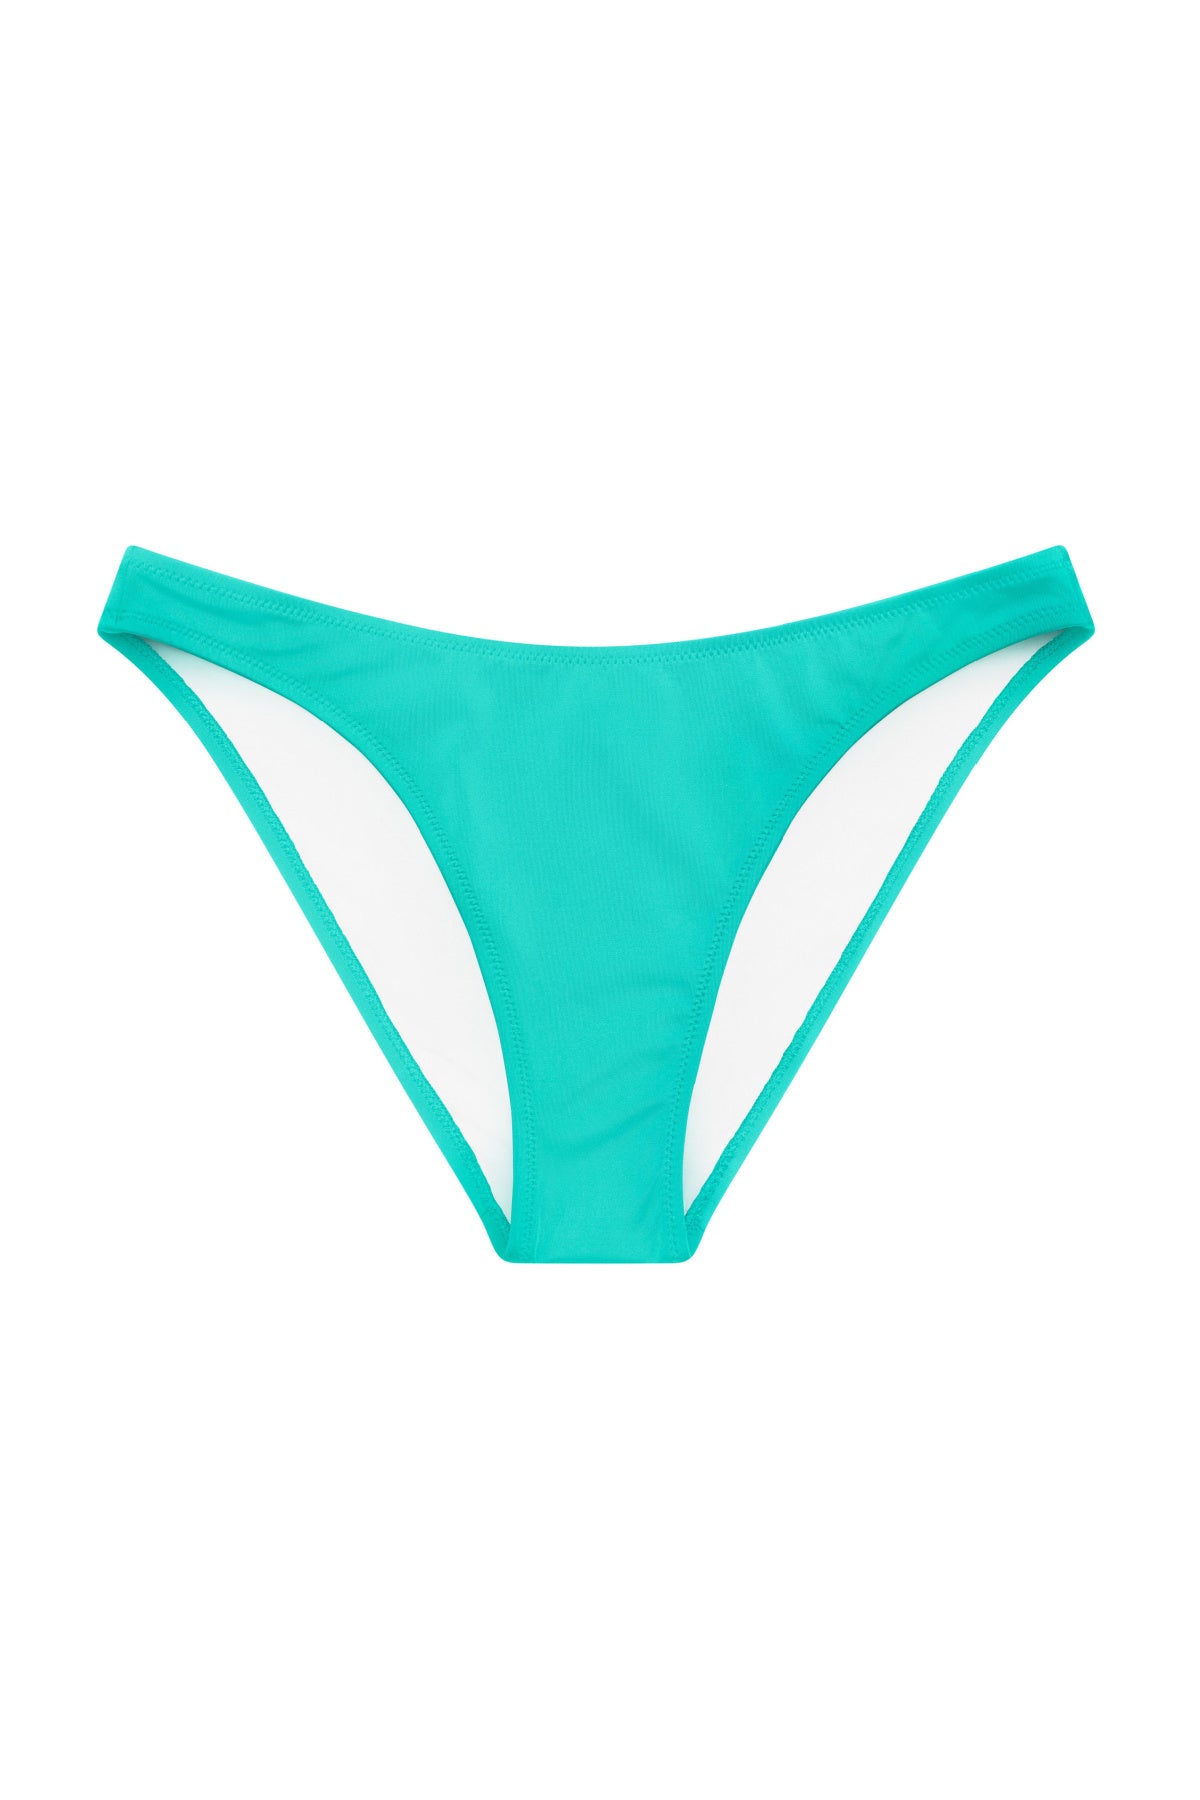 Women's Bikini, By Charmleaks/ Charmo, Size Small (8) Green BNWT